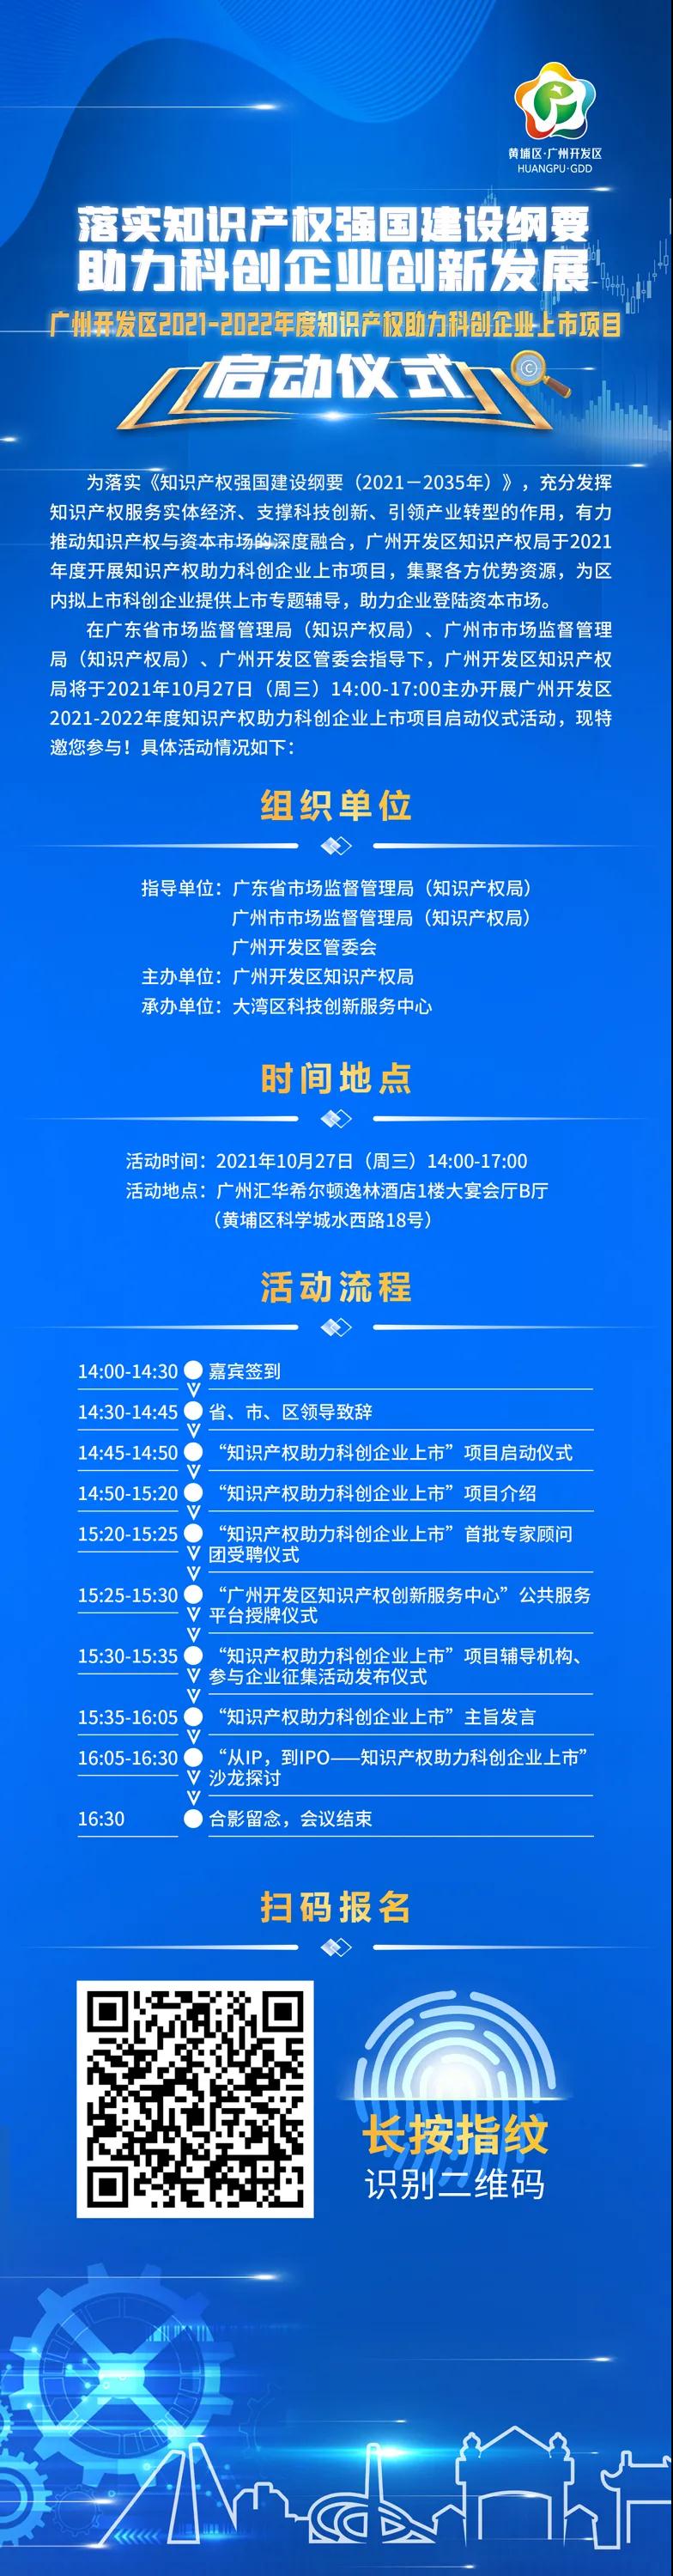 邀请函 | 广州开发区2021-2022年度知识产权助力科创企业上市项目启动仪式活动邀您参加